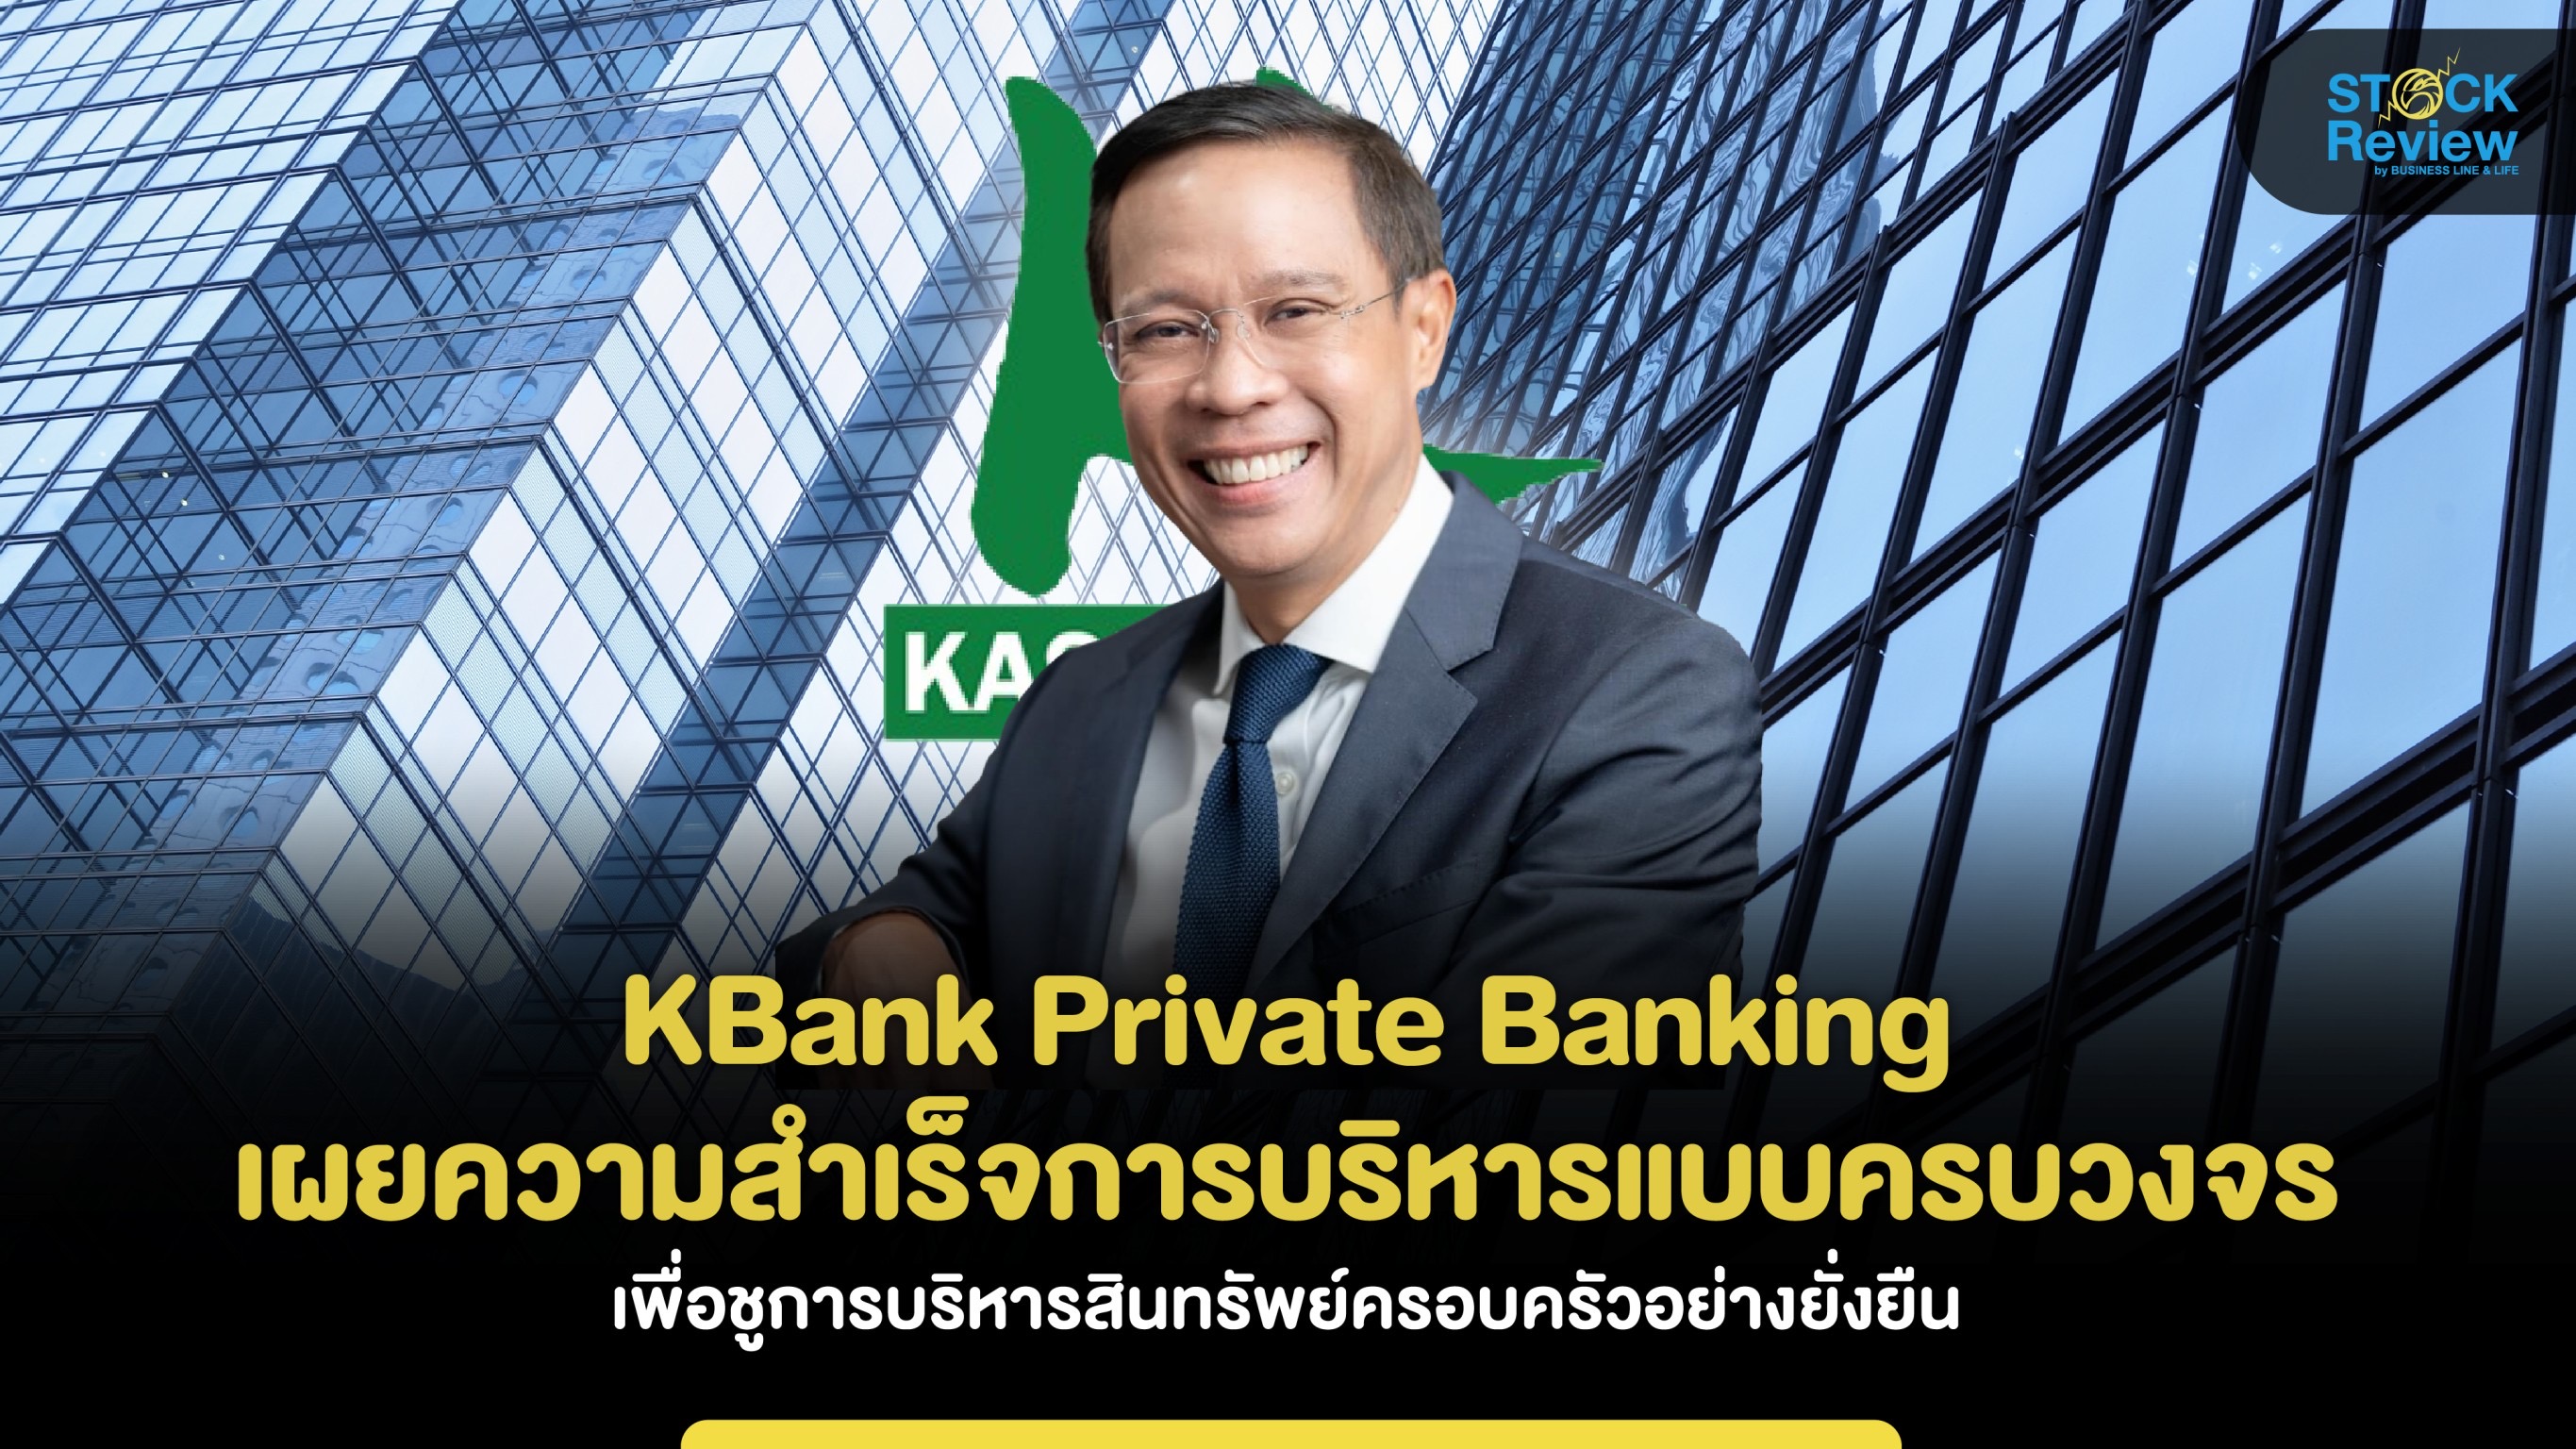 KBank Private Banking เผยความสำเร็จการบริหารแบบครบวงจร ชูการบริหารสินทรัพย์ครอบครัวอย่างยั่งยืน